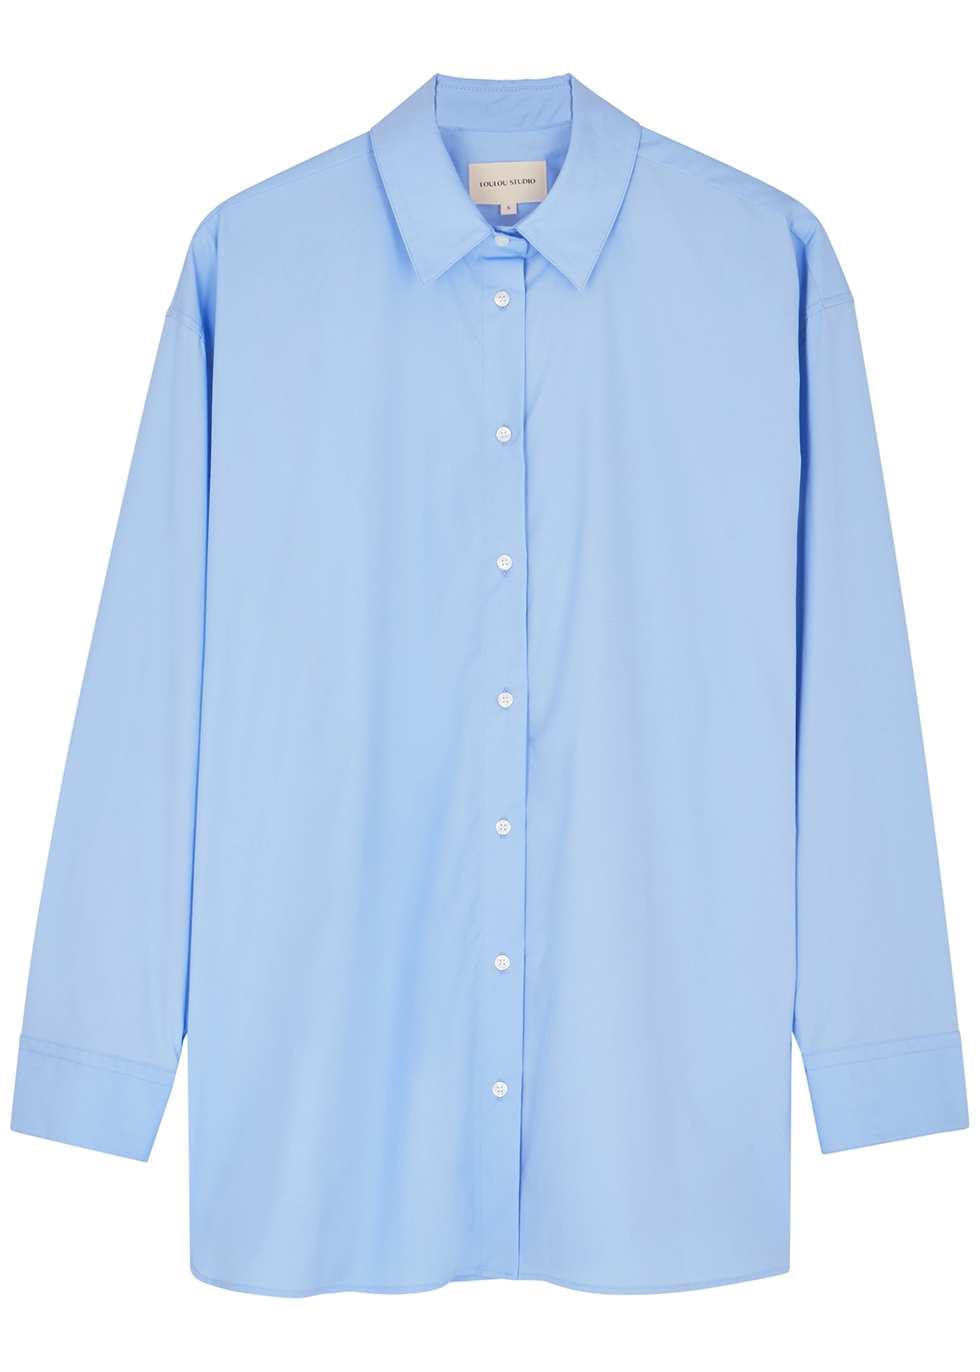 Loulou Studio Blue cotton shirt - Harvey Nichols